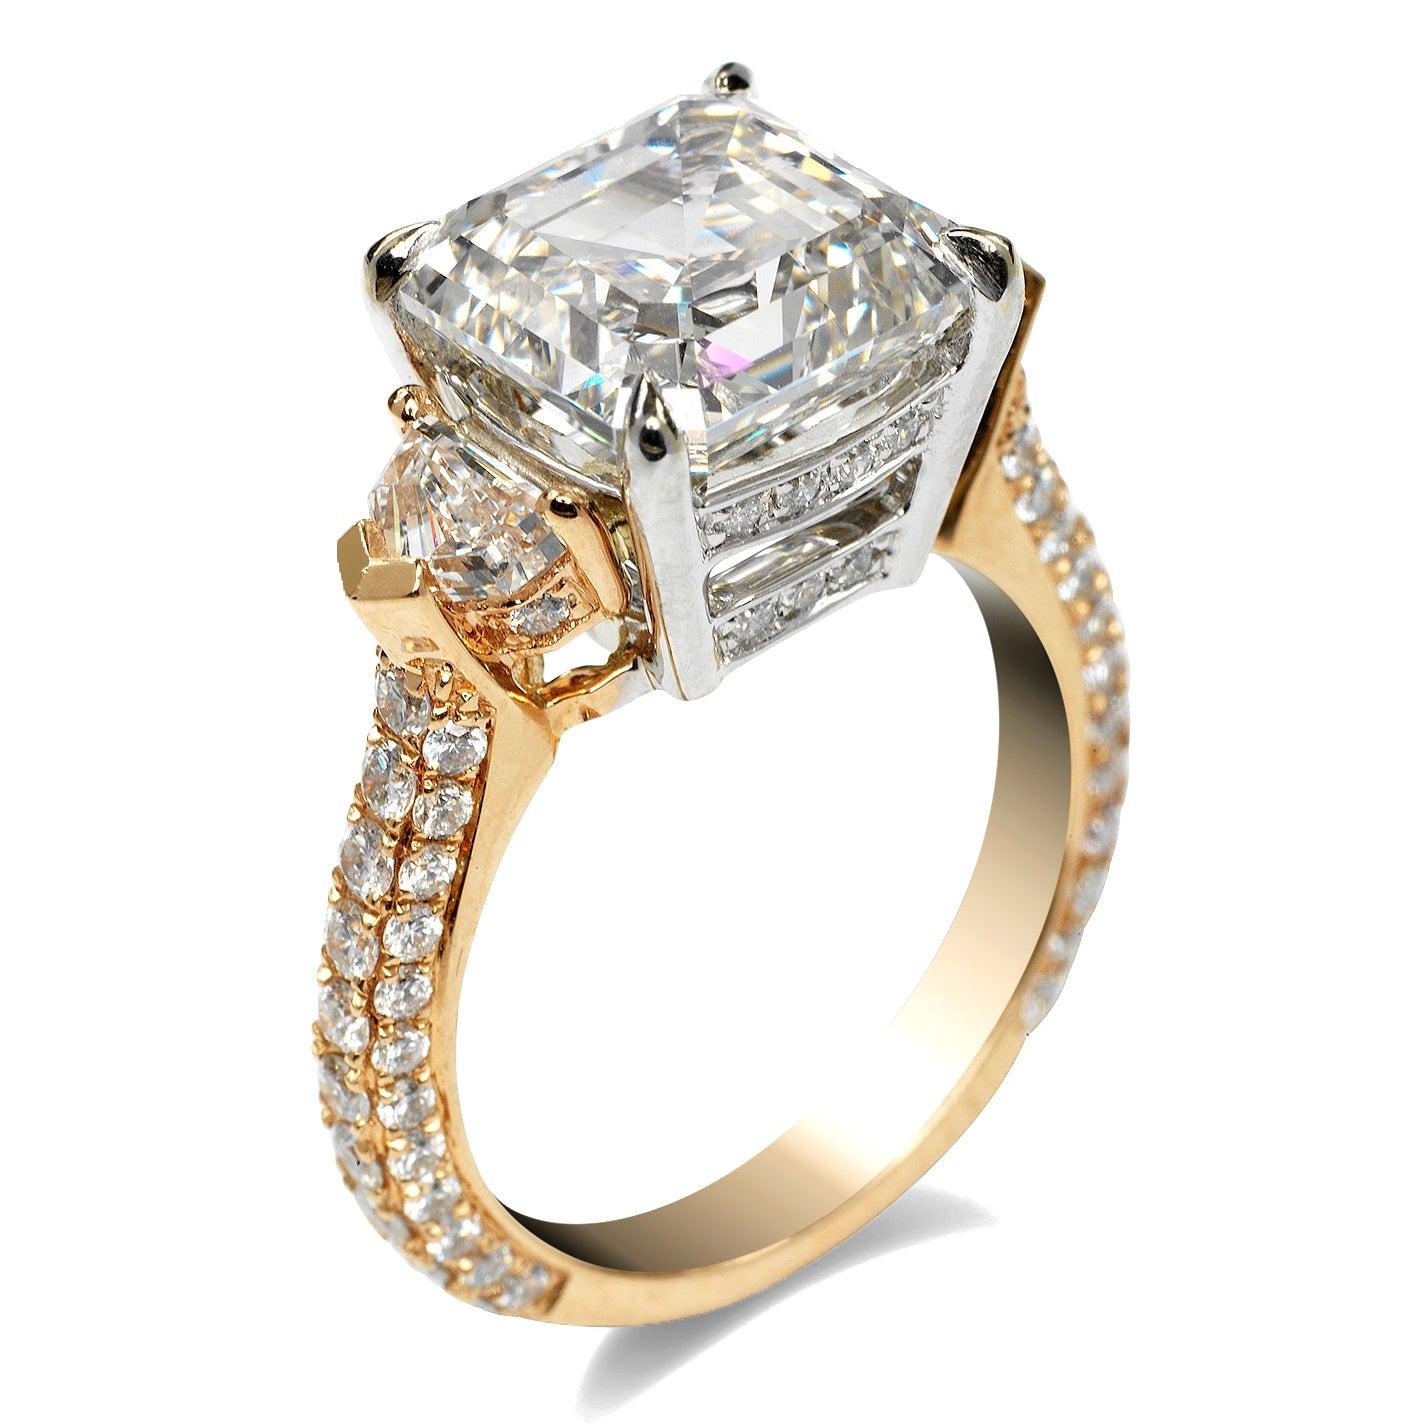 8 carat asscher cut diamond ring